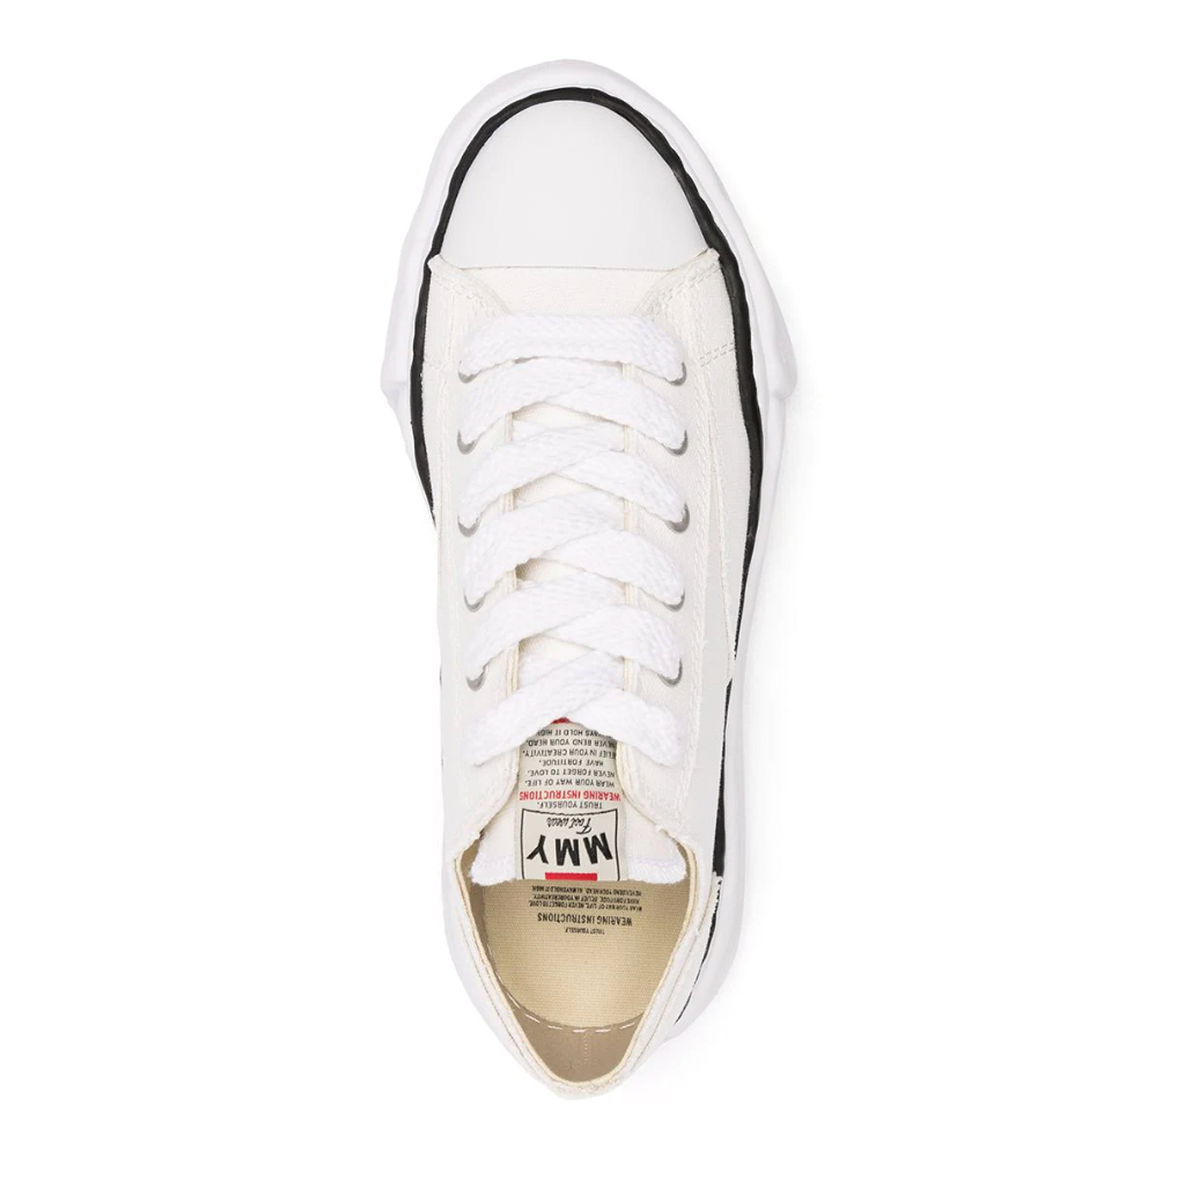 Maison Mihara Yasuhiro "Peterson" White Sneakers